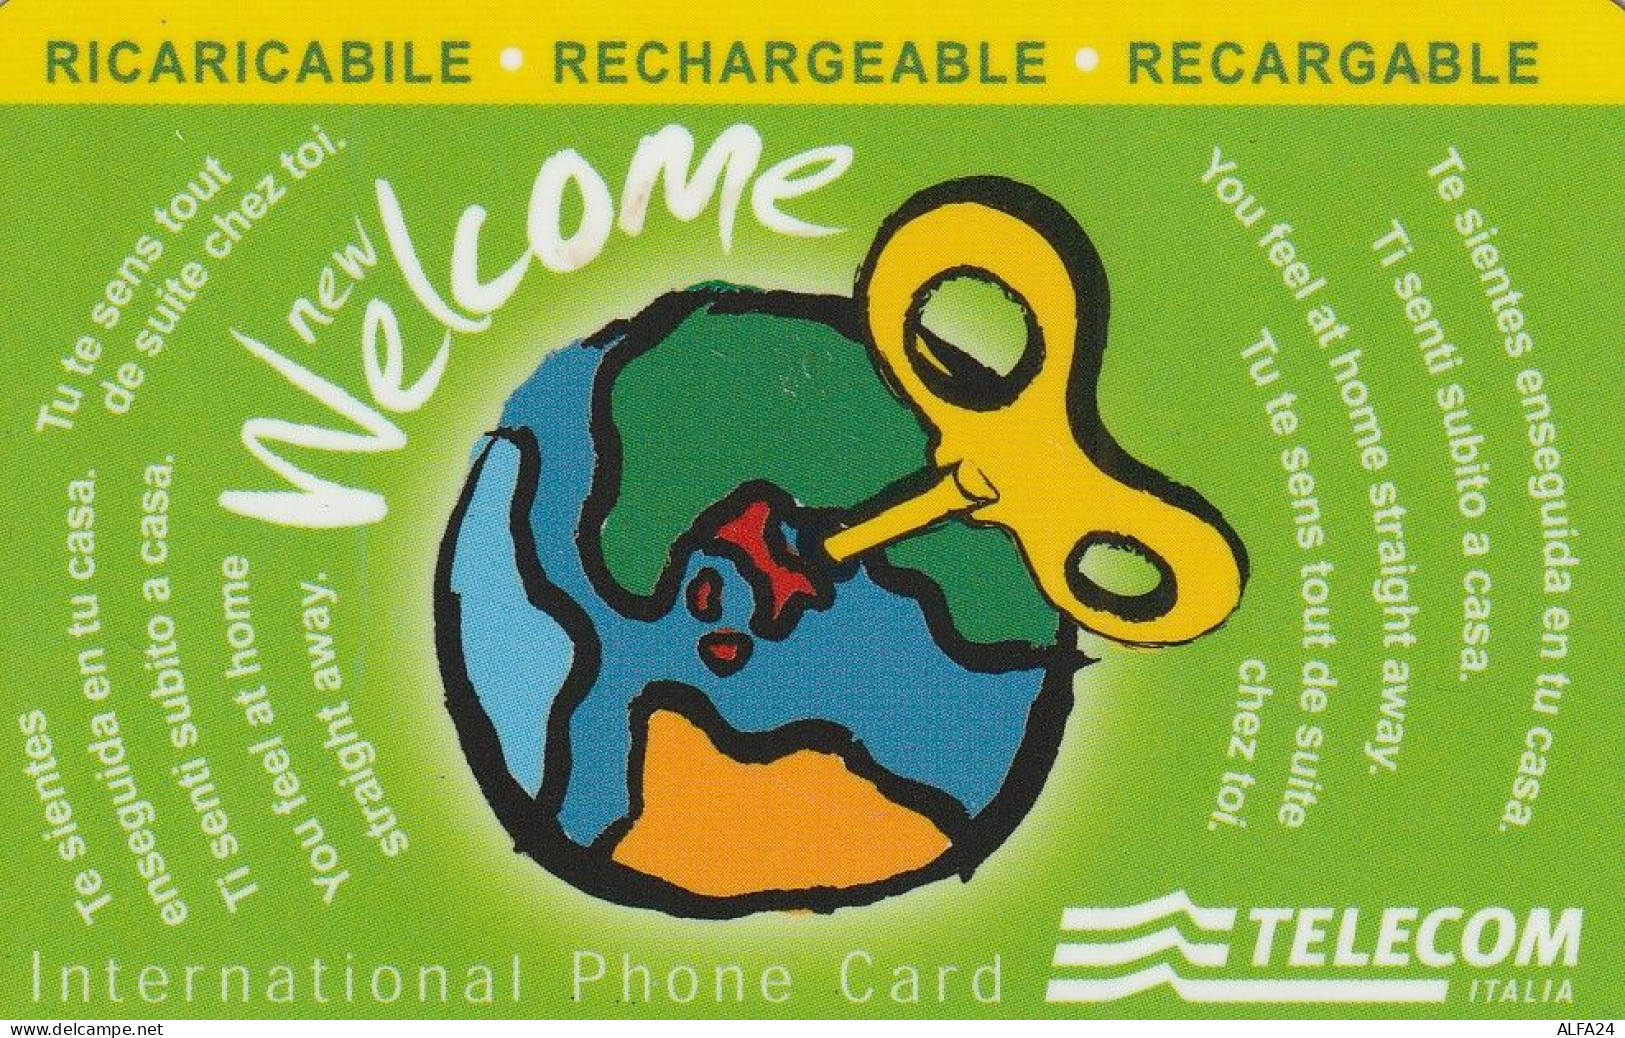 PREPAID PHONE CARD TELECOM WELCOME RICARICABILE  (E77.17.1 - Cartes GSM Prépayées & Recharges